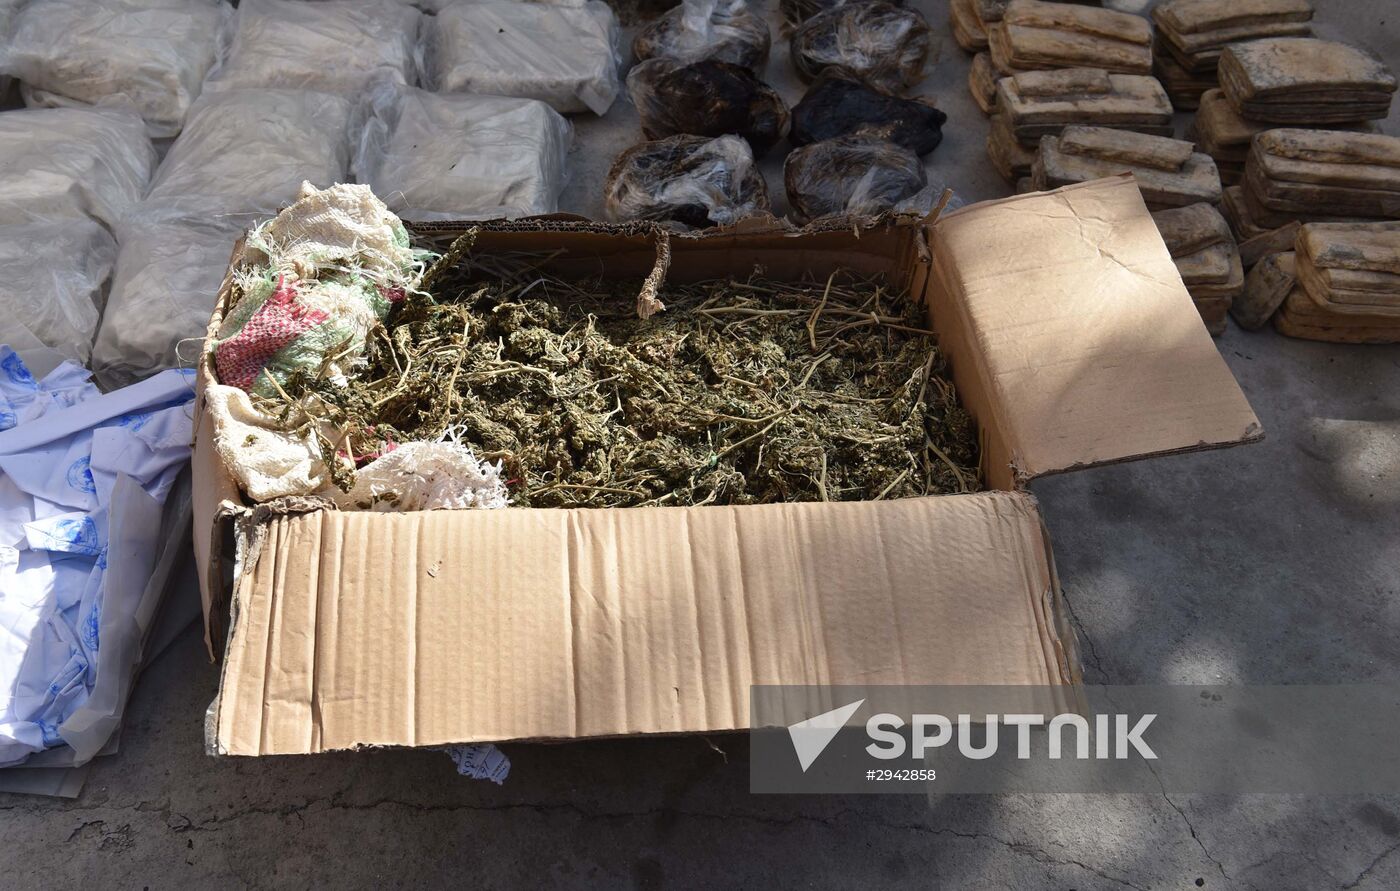 Destruction of drugs in Tajikistan